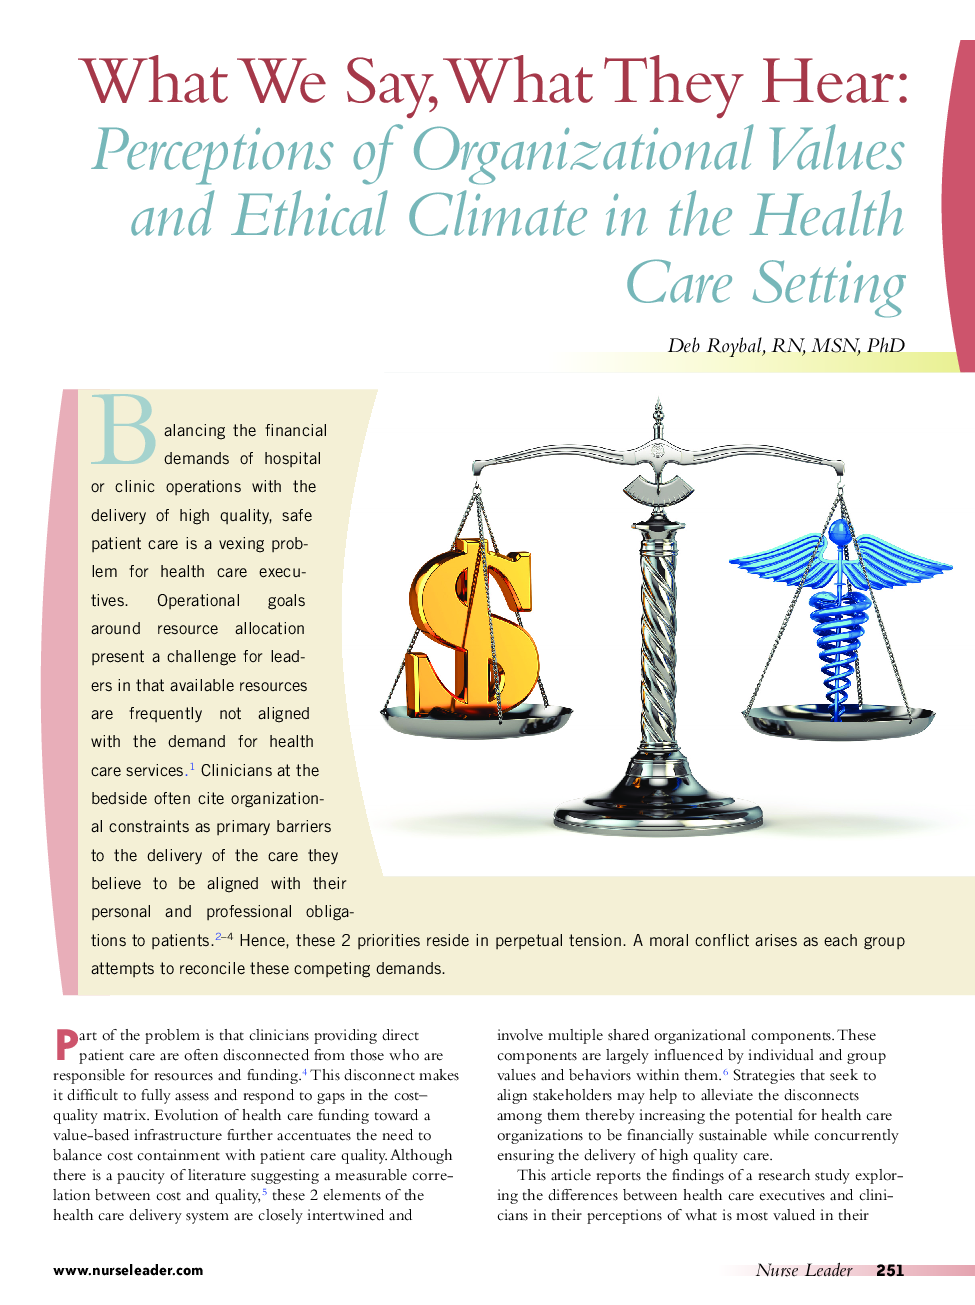 آنچه ما می گوییم، چه می شنویم: درک ارزش های سازمانی و محیط زیست اخلاقی در تنظیم مراقبت های بهداشتی 